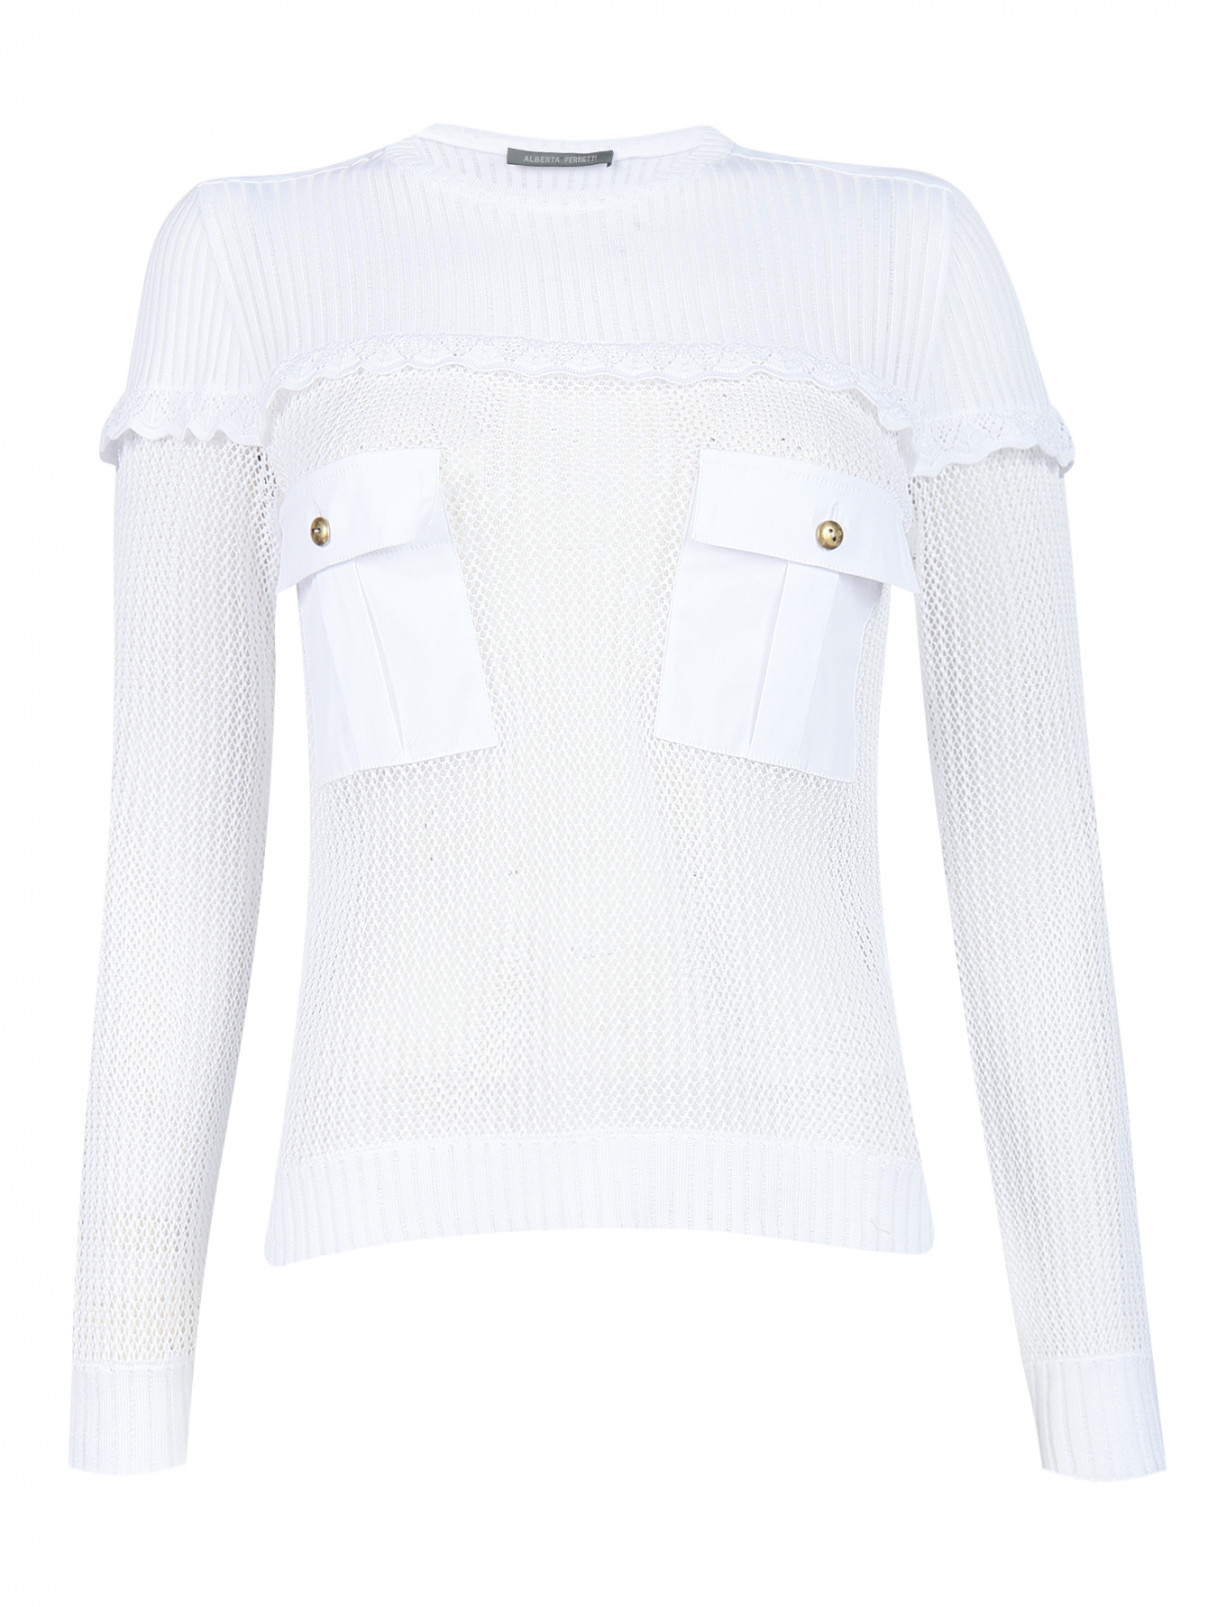 Джемпер из хлопка с накладными карманами Alberta Ferretti  –  Общий вид  – Цвет:  Белый